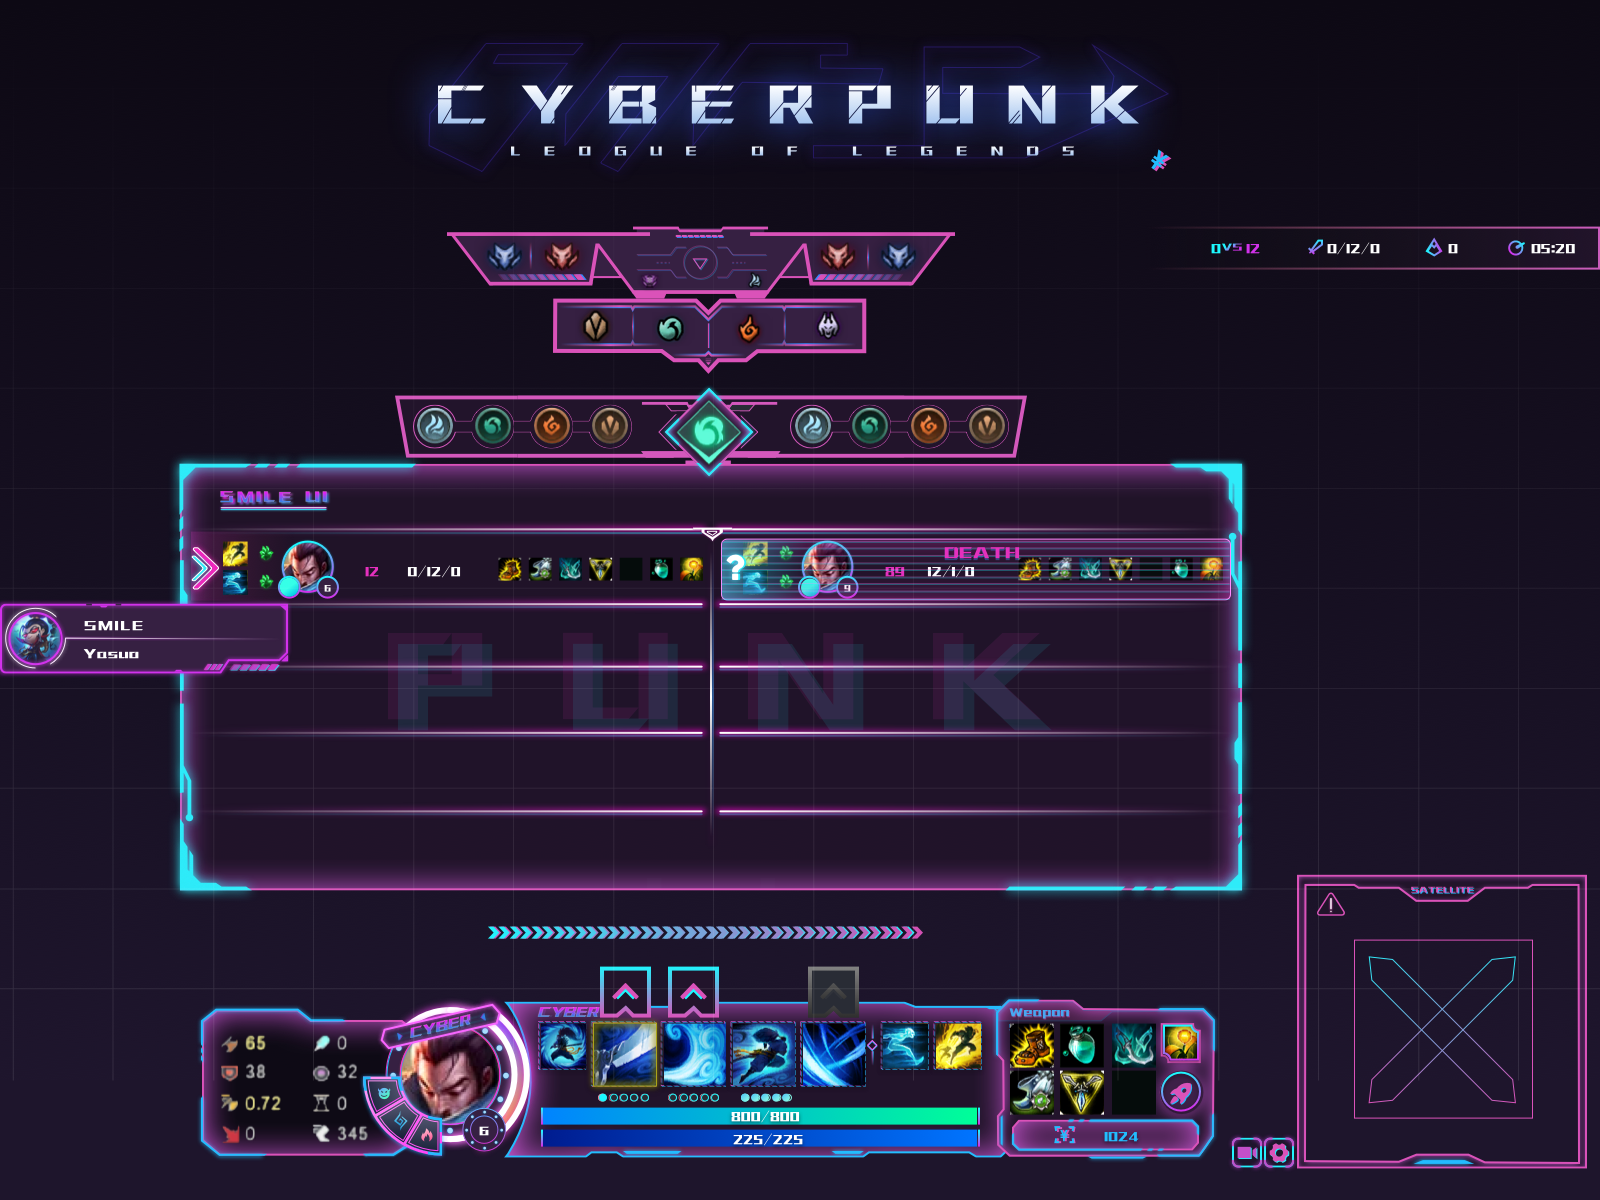 Cyberpunk script. Cyberpunk Интерфейс. Киберпанк Интерфейс игры. Киберпанк UI. Элементы в стиле киберпанк.